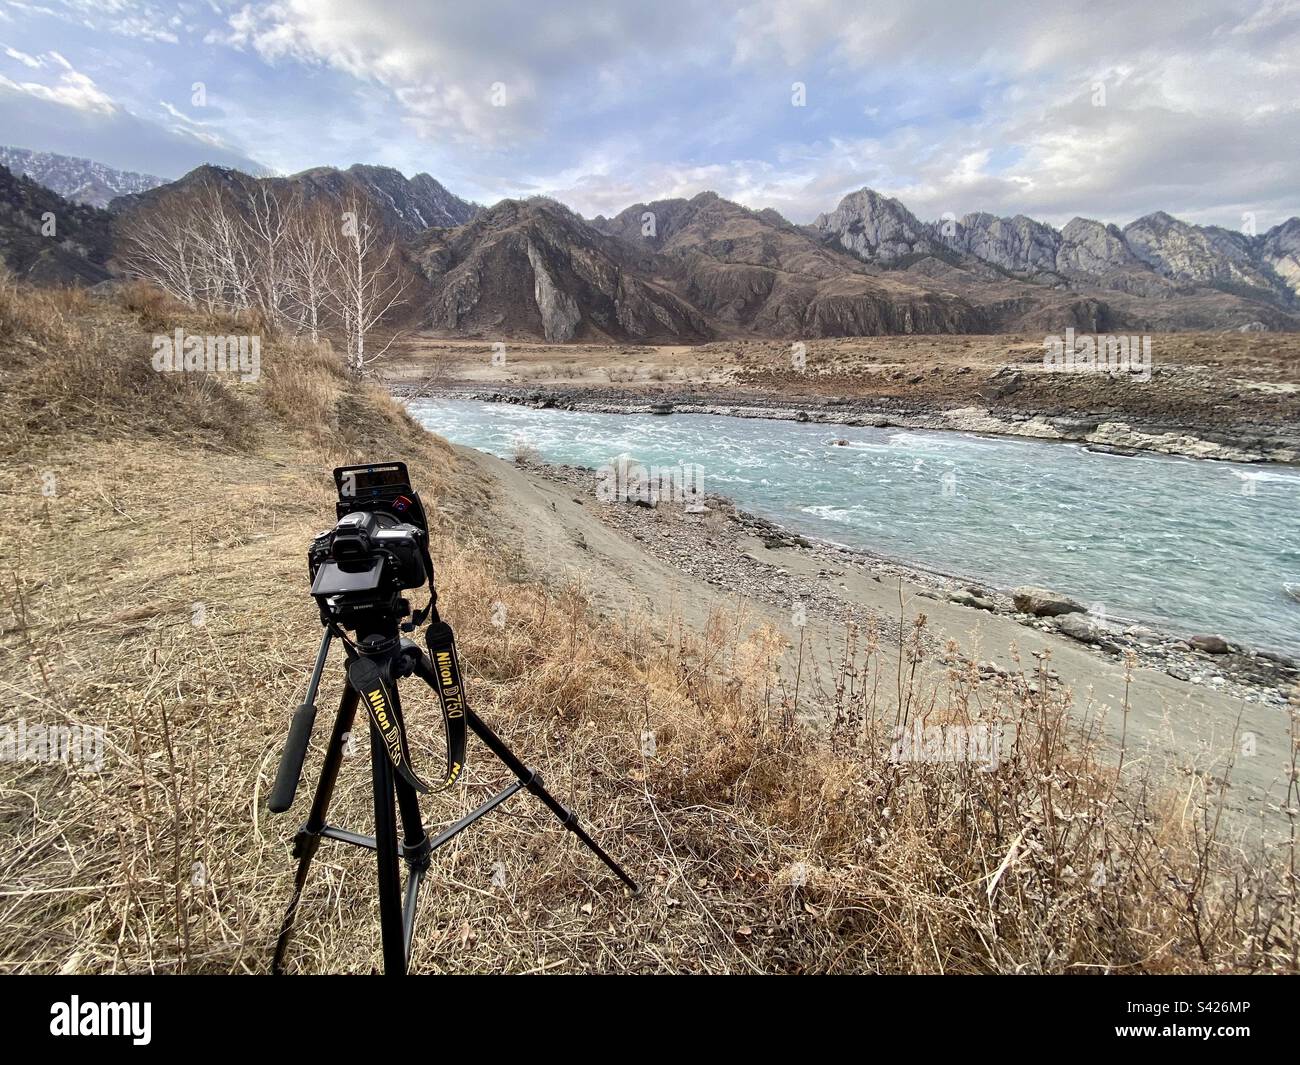 La fotocamera Nikon D750 con filtri di luce quadrati si trova sul bordo della riva del fiume con le montagne ad Altai. Foto Stock